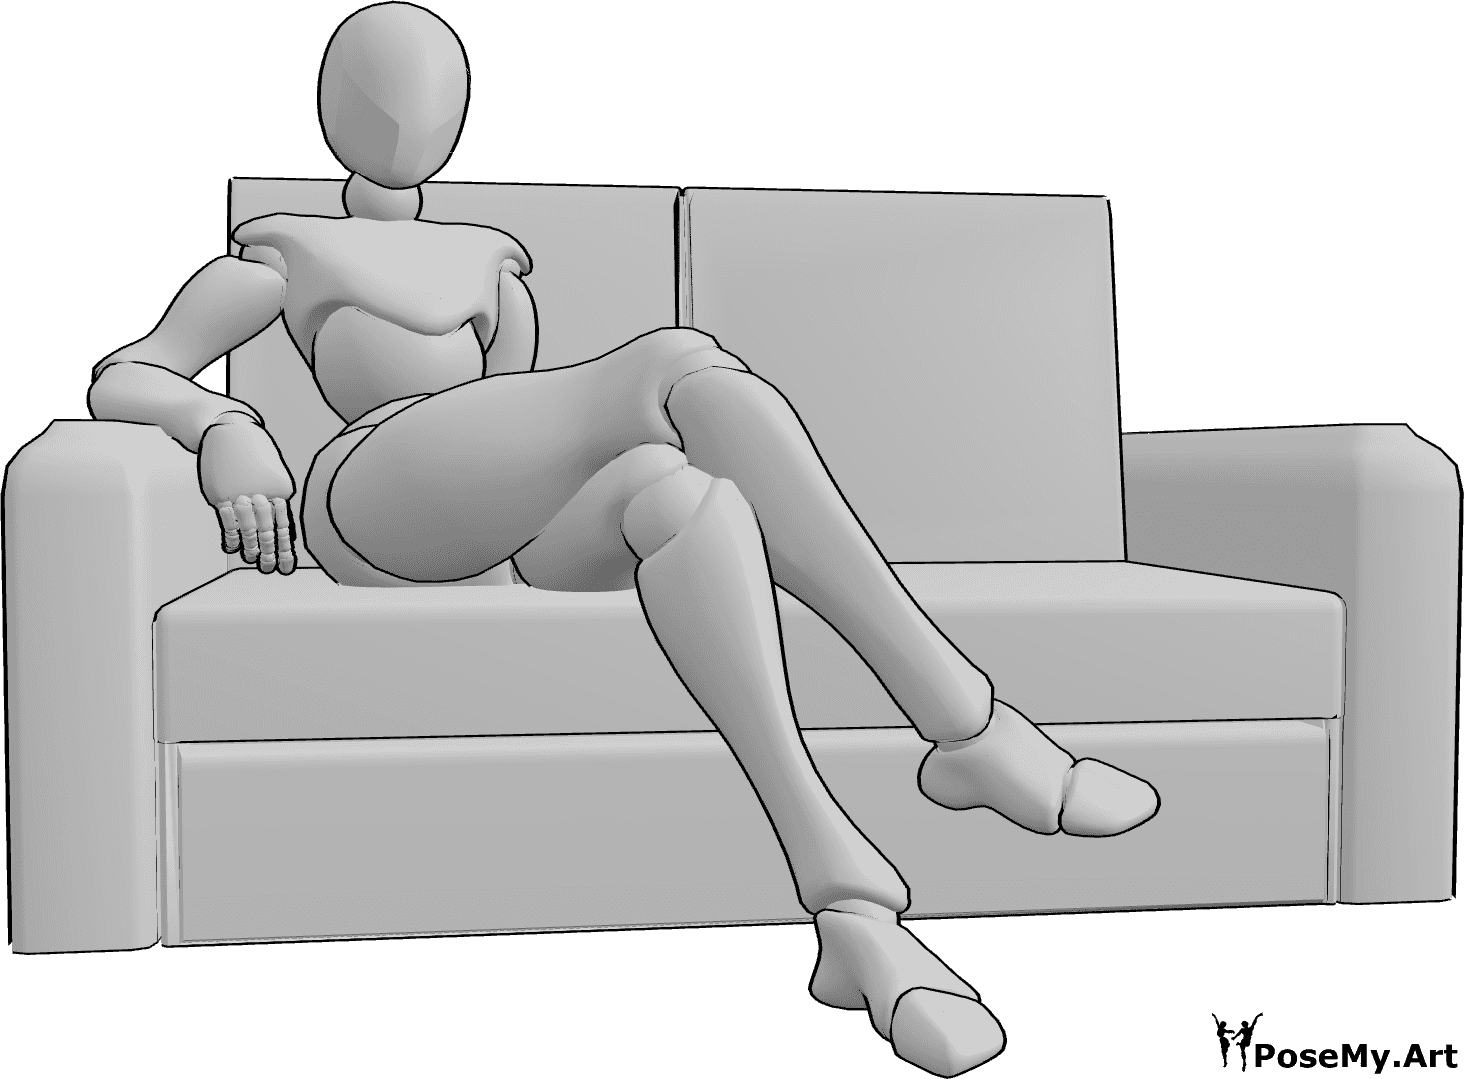 Référence des poses- Position assise confortable sur le canapé - La femme est assise confortablement sur le canapé, les jambes croisées.